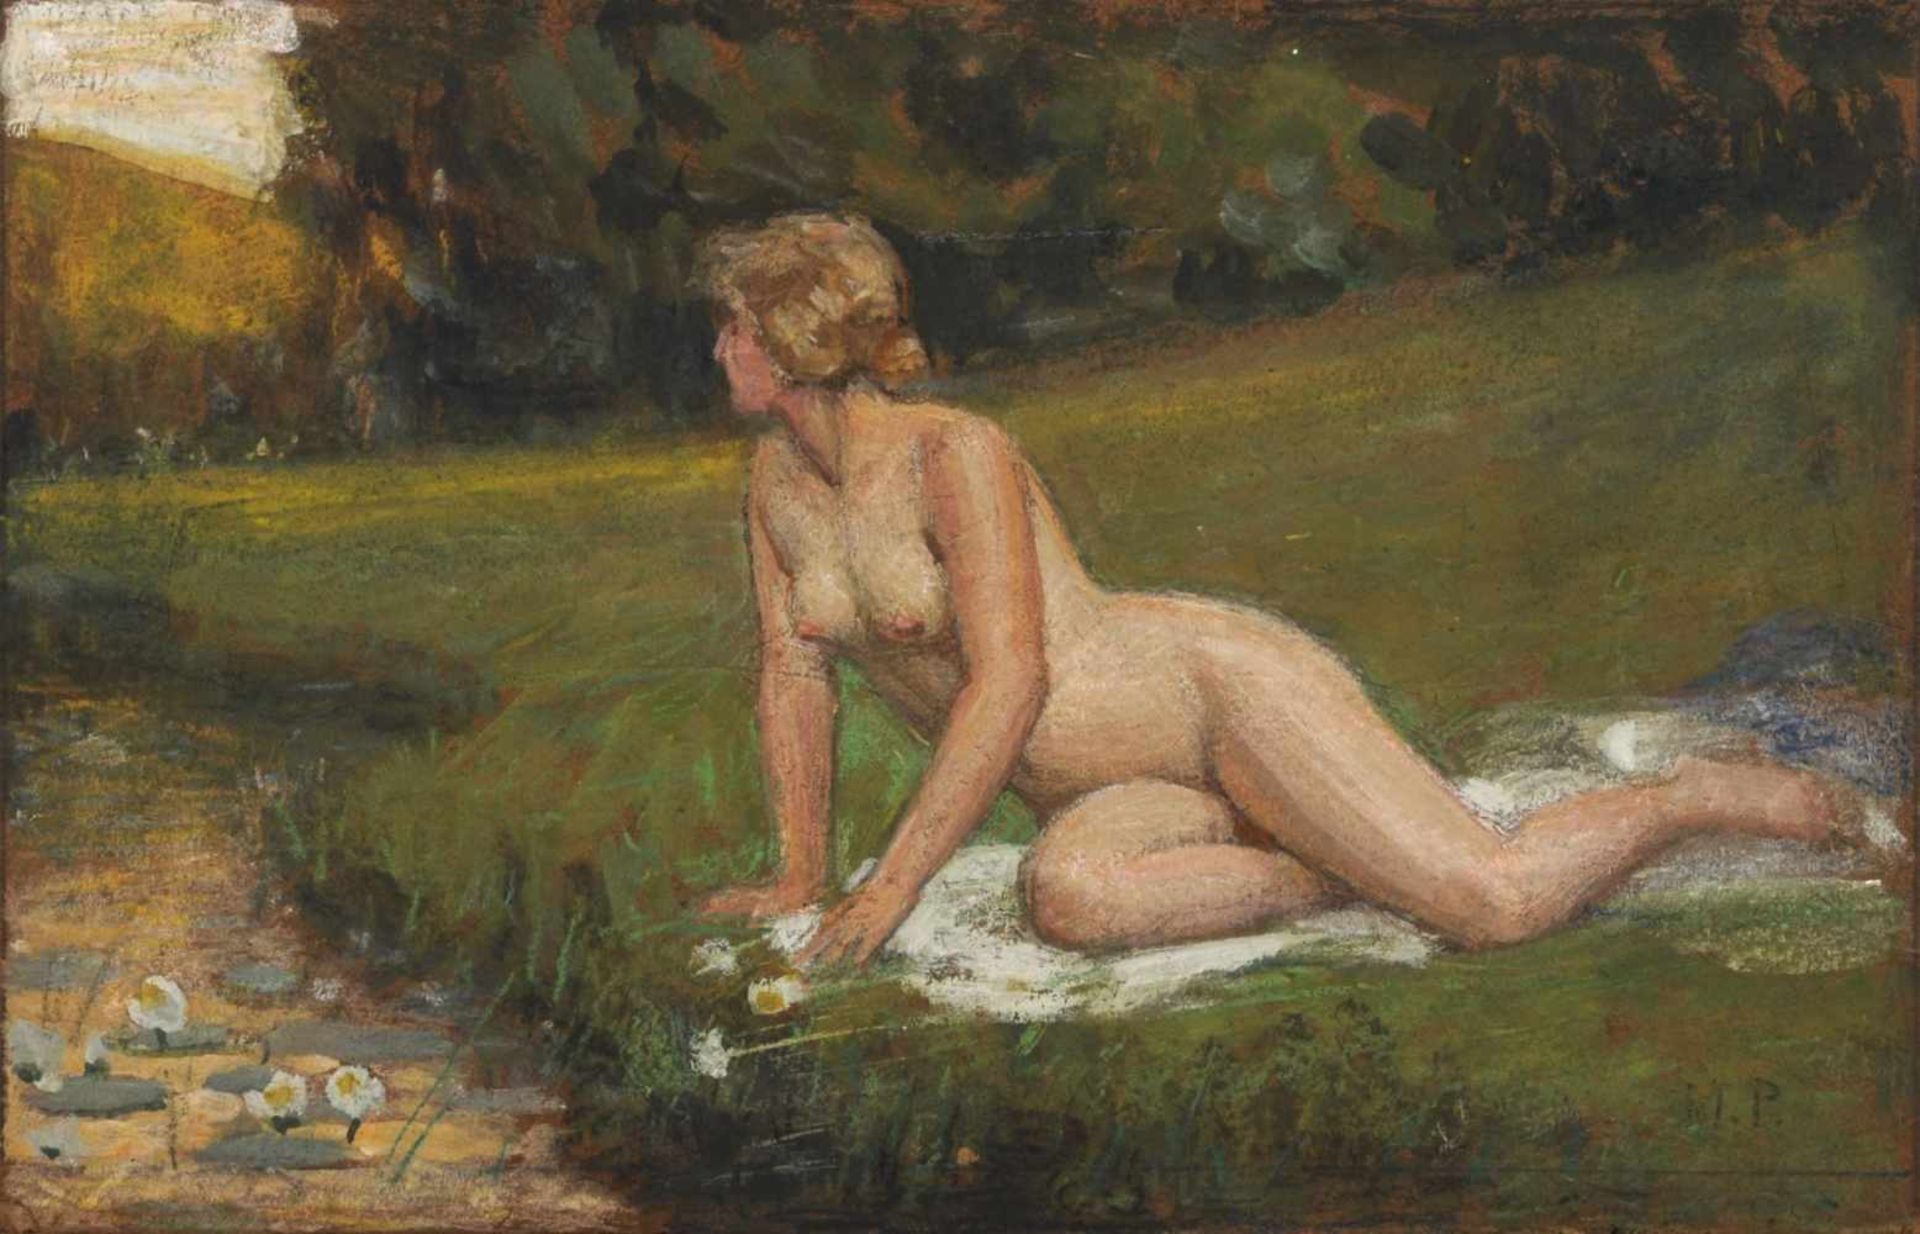 Max Pietschmann, Weiblicher Akt an einem Flusslauf in sommerlicher Landschaft. 1930's.